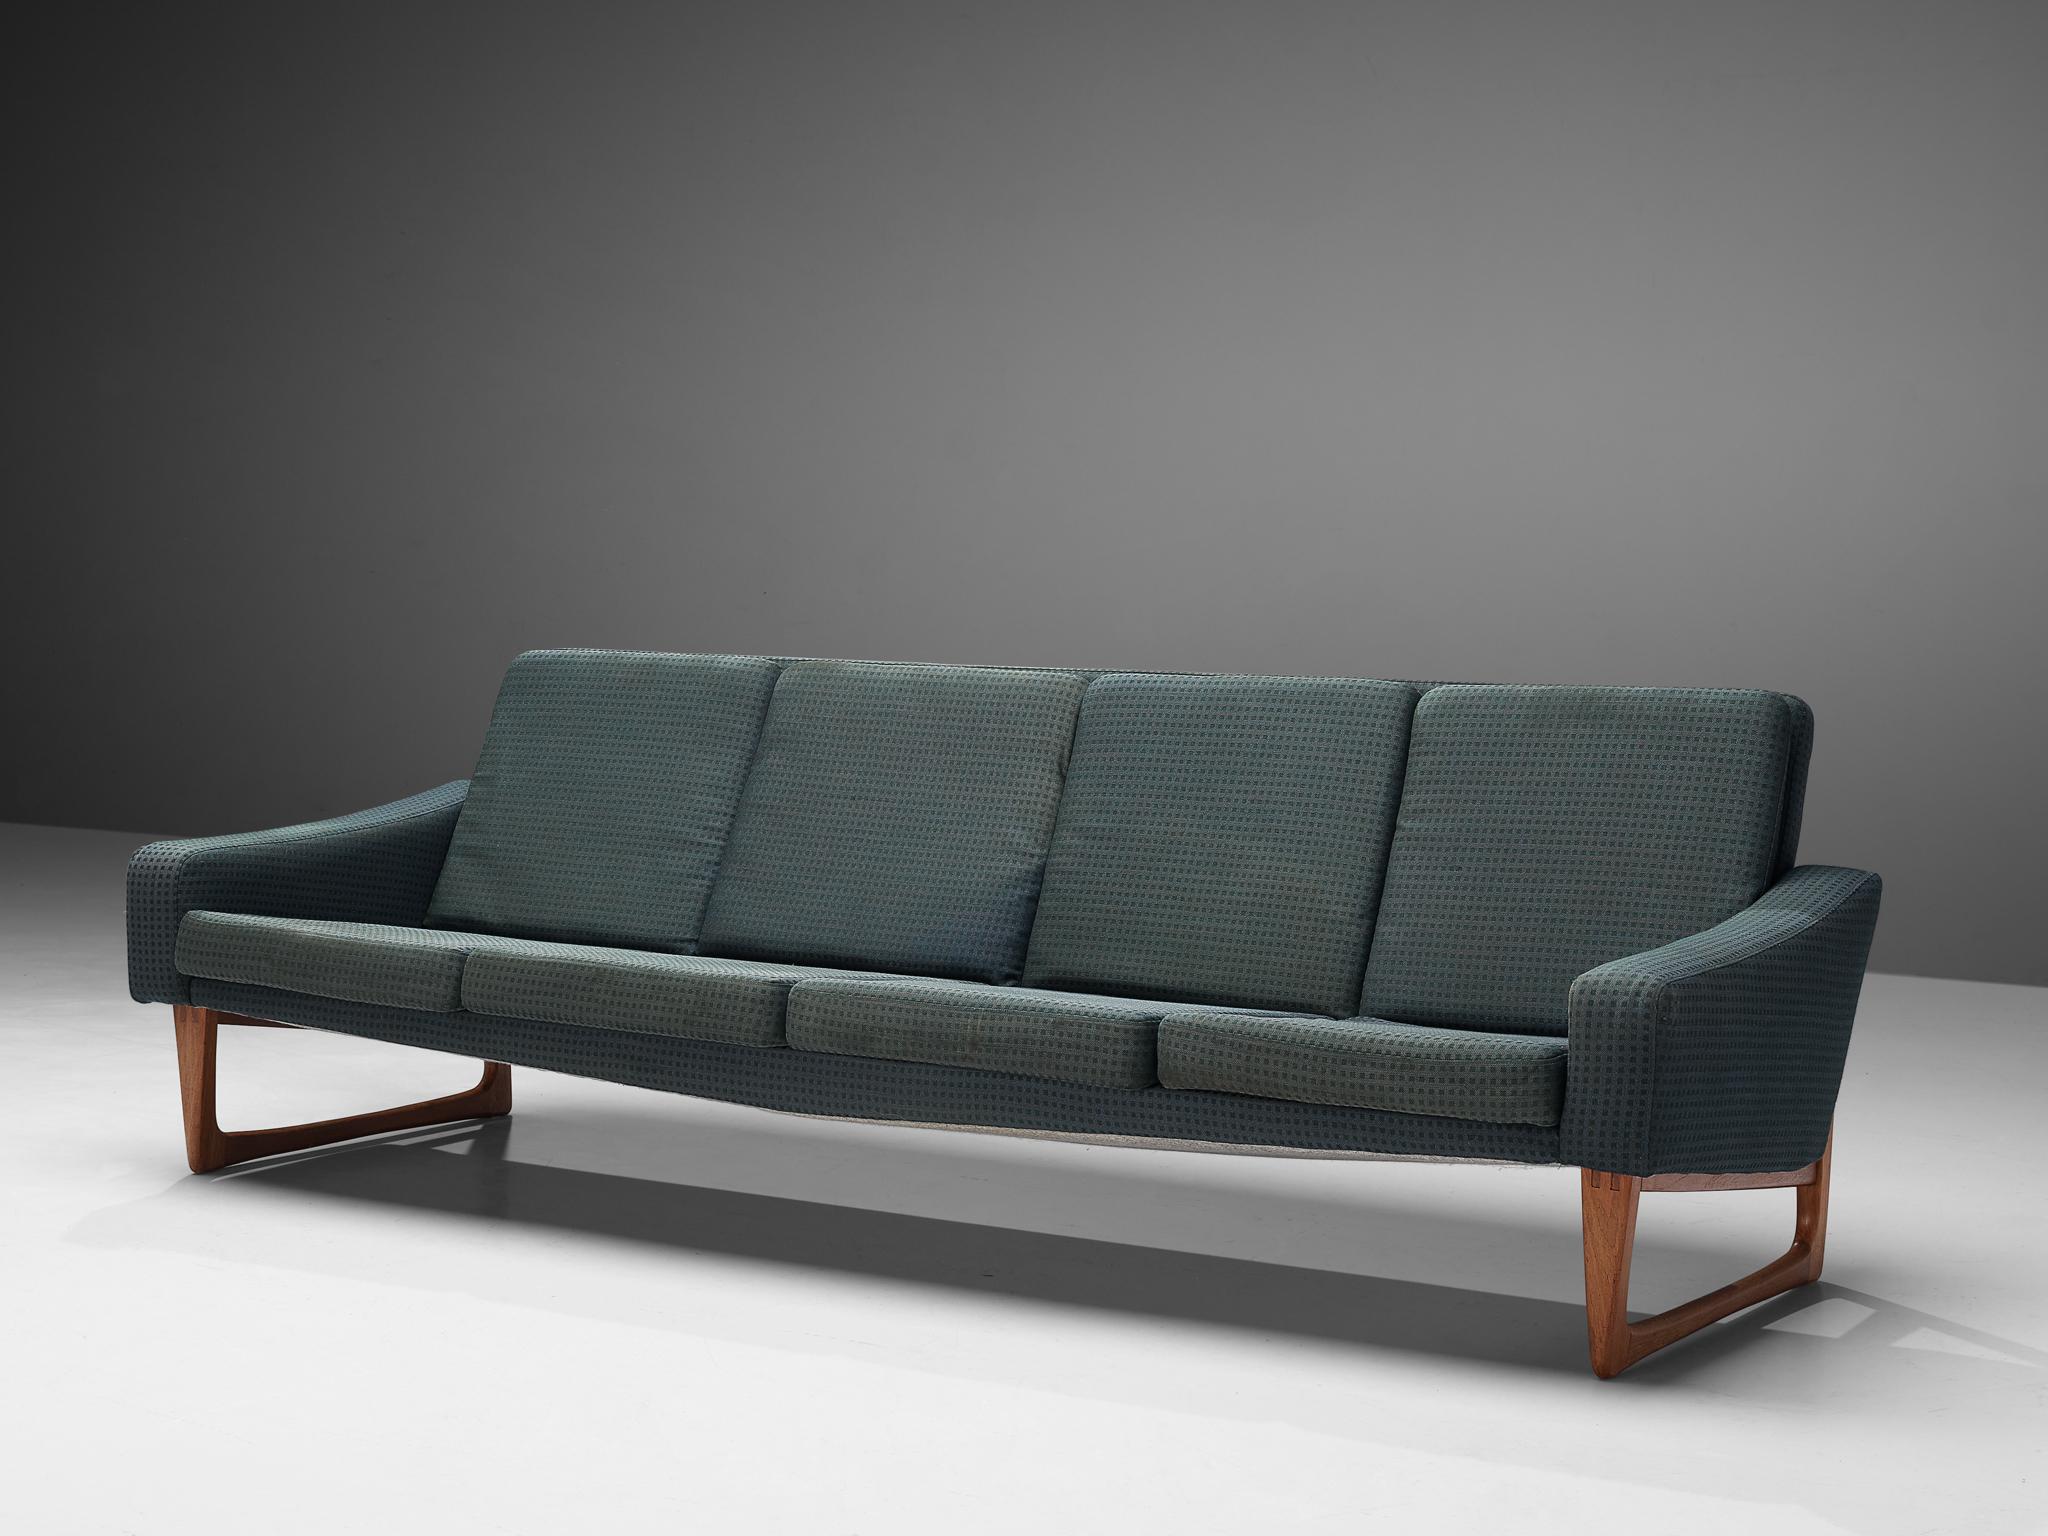 Sofa, blauer Stoff, Teakholz, Skandinavien, 1950er Jahre

Wunderschönes viersitziges Sofa aus den 1950er Jahren. Dieses große Sofa ist nicht nur schön in seiner schlichten Form, sondern bietet auch viel Komfort. Der Rahmen aus Teakholz ist von